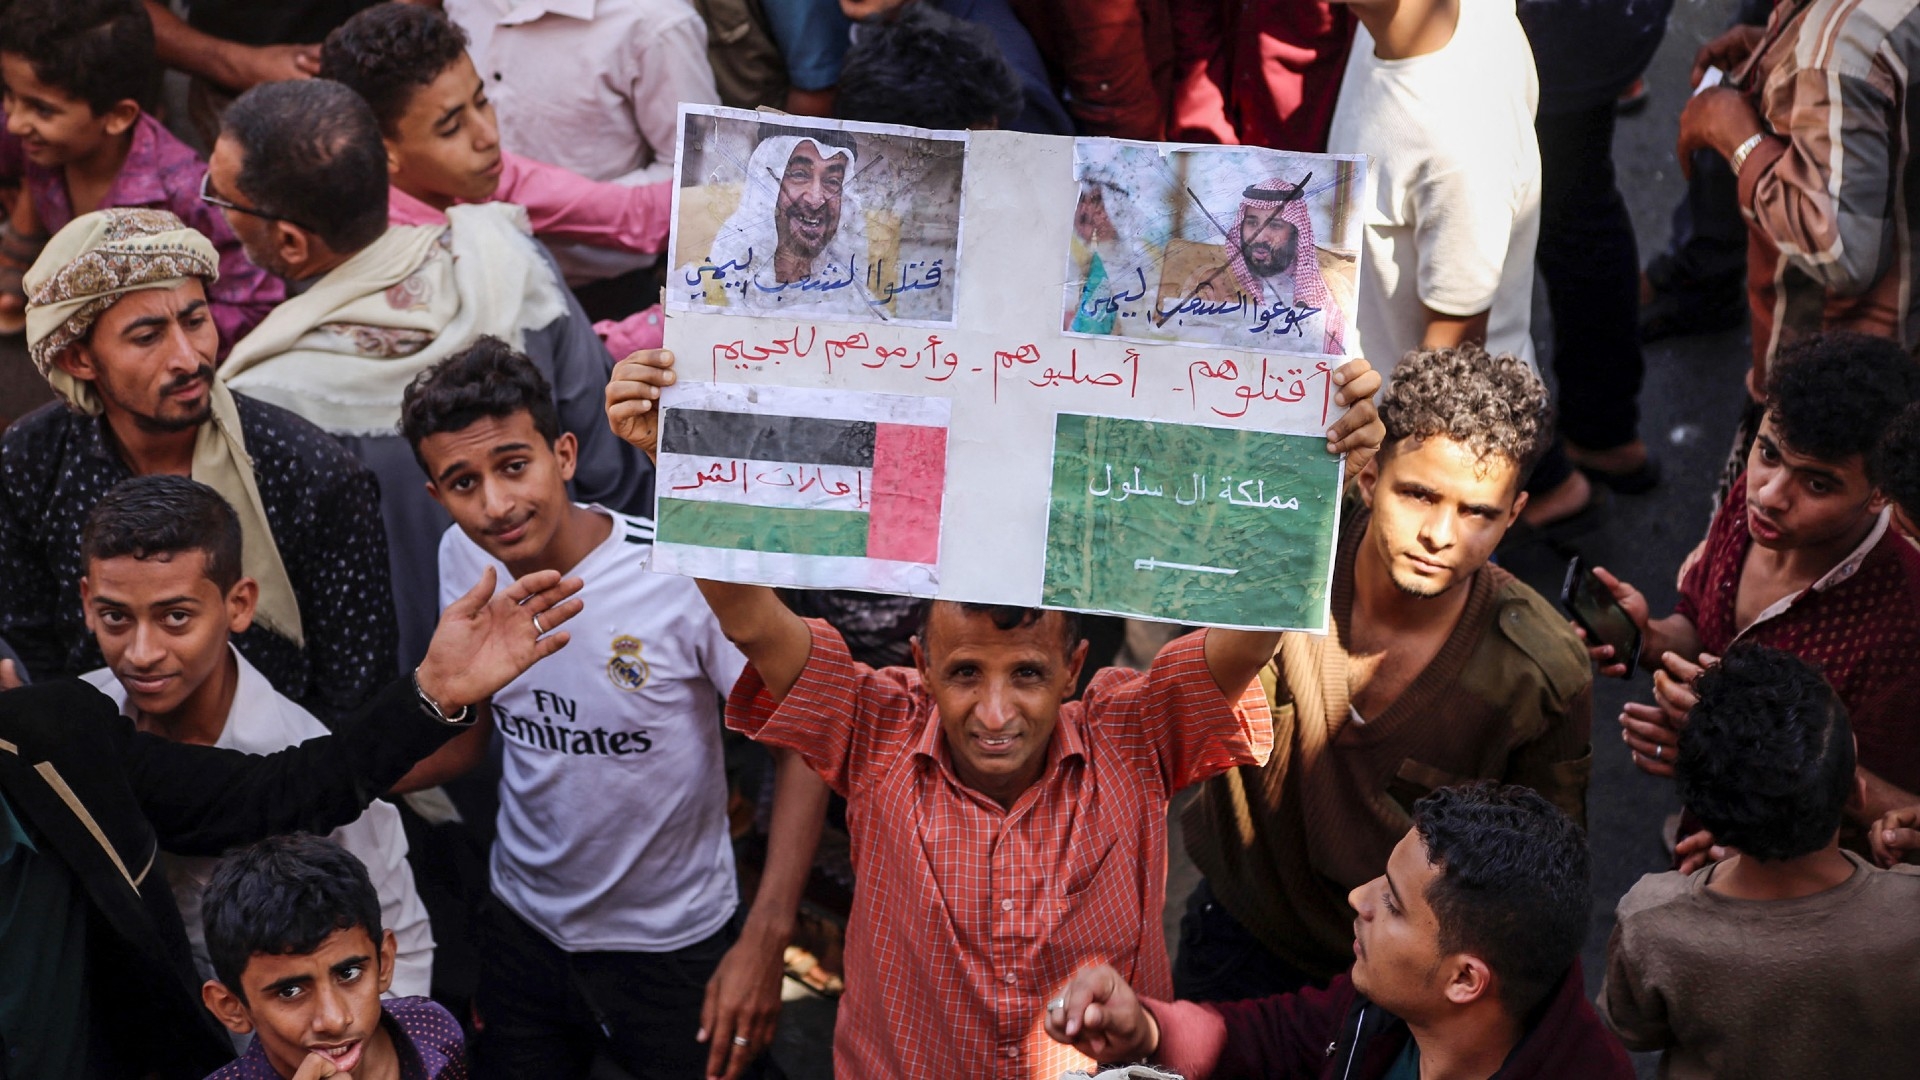 Un manifestant yéménite brandit une pancarte comportant les visages barrés du prince héritier saoudien Mohammed ben Salmane (à droite) et du président émirati Mohammed ben Zayed (à gauche) dans la ville yéménite de Ta’izz, le 4 octobre 2018 (AFP/Ahmad al-Basha)